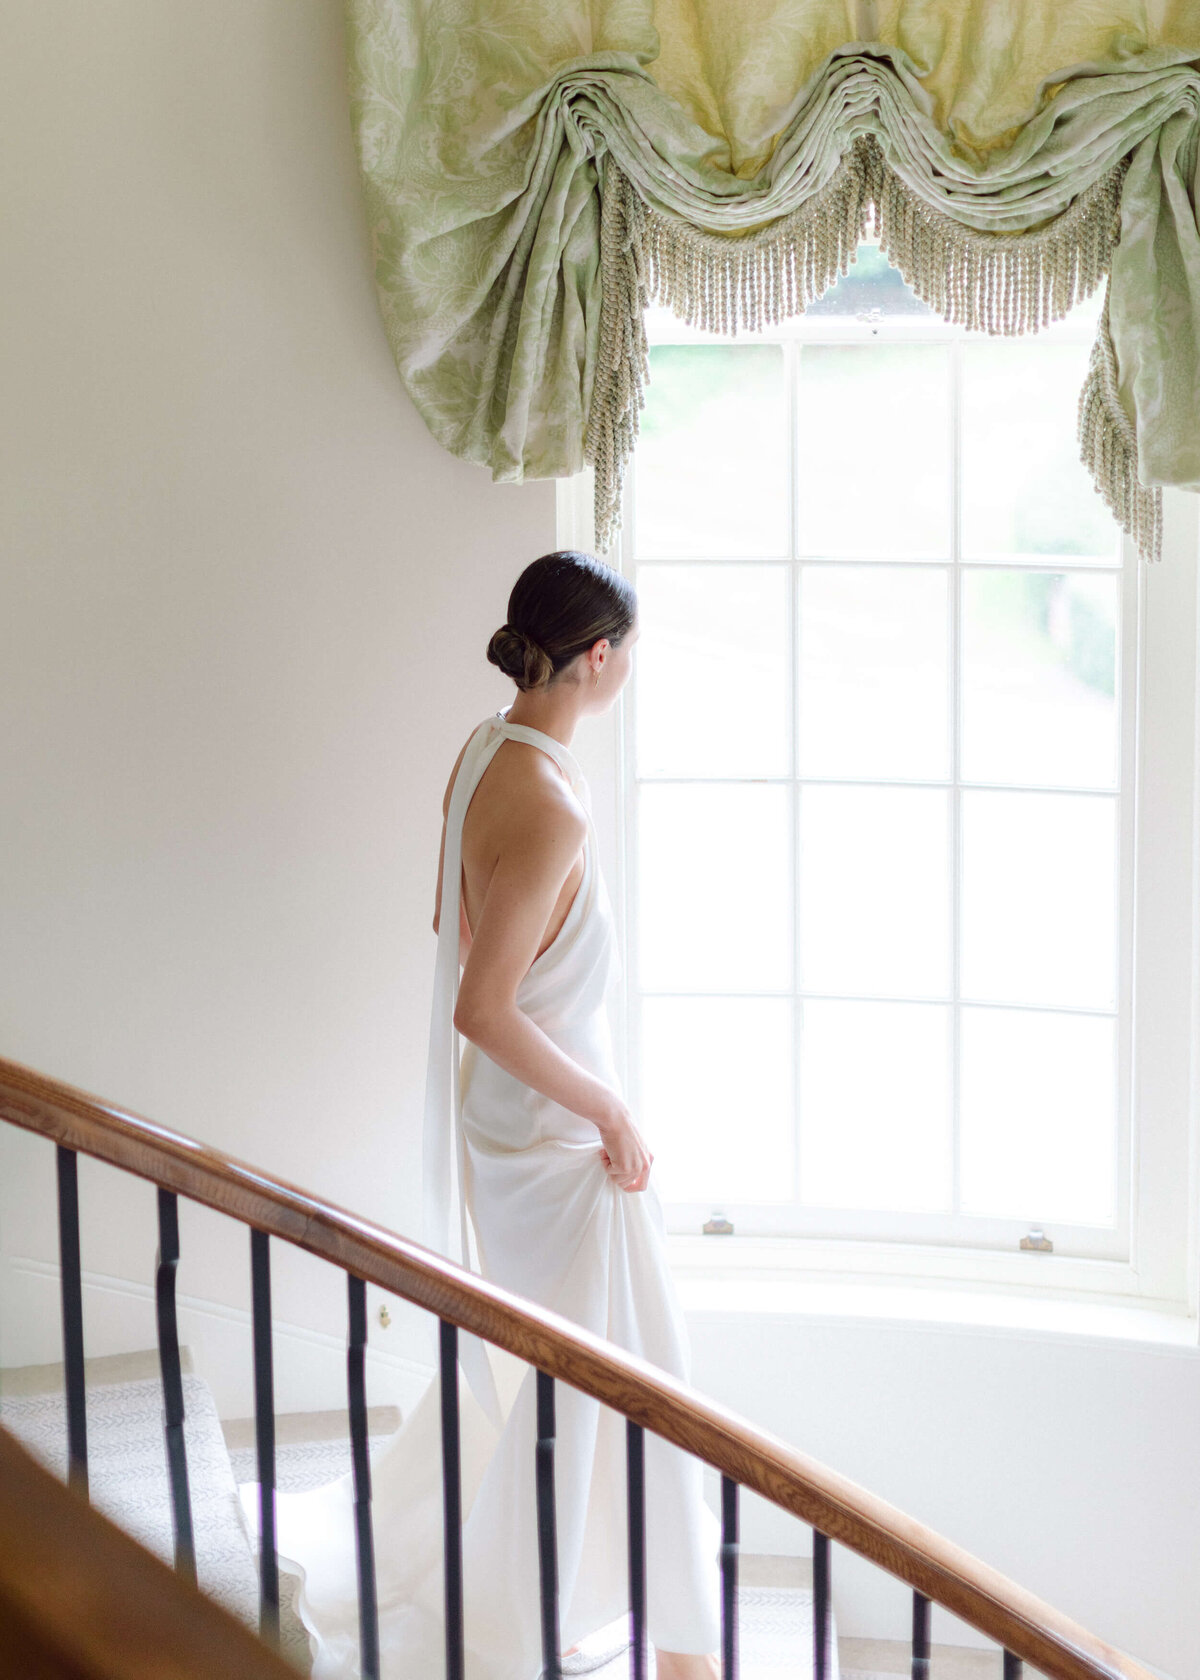 chloe-winstanley-weddings-stairs-halfpenny-dress